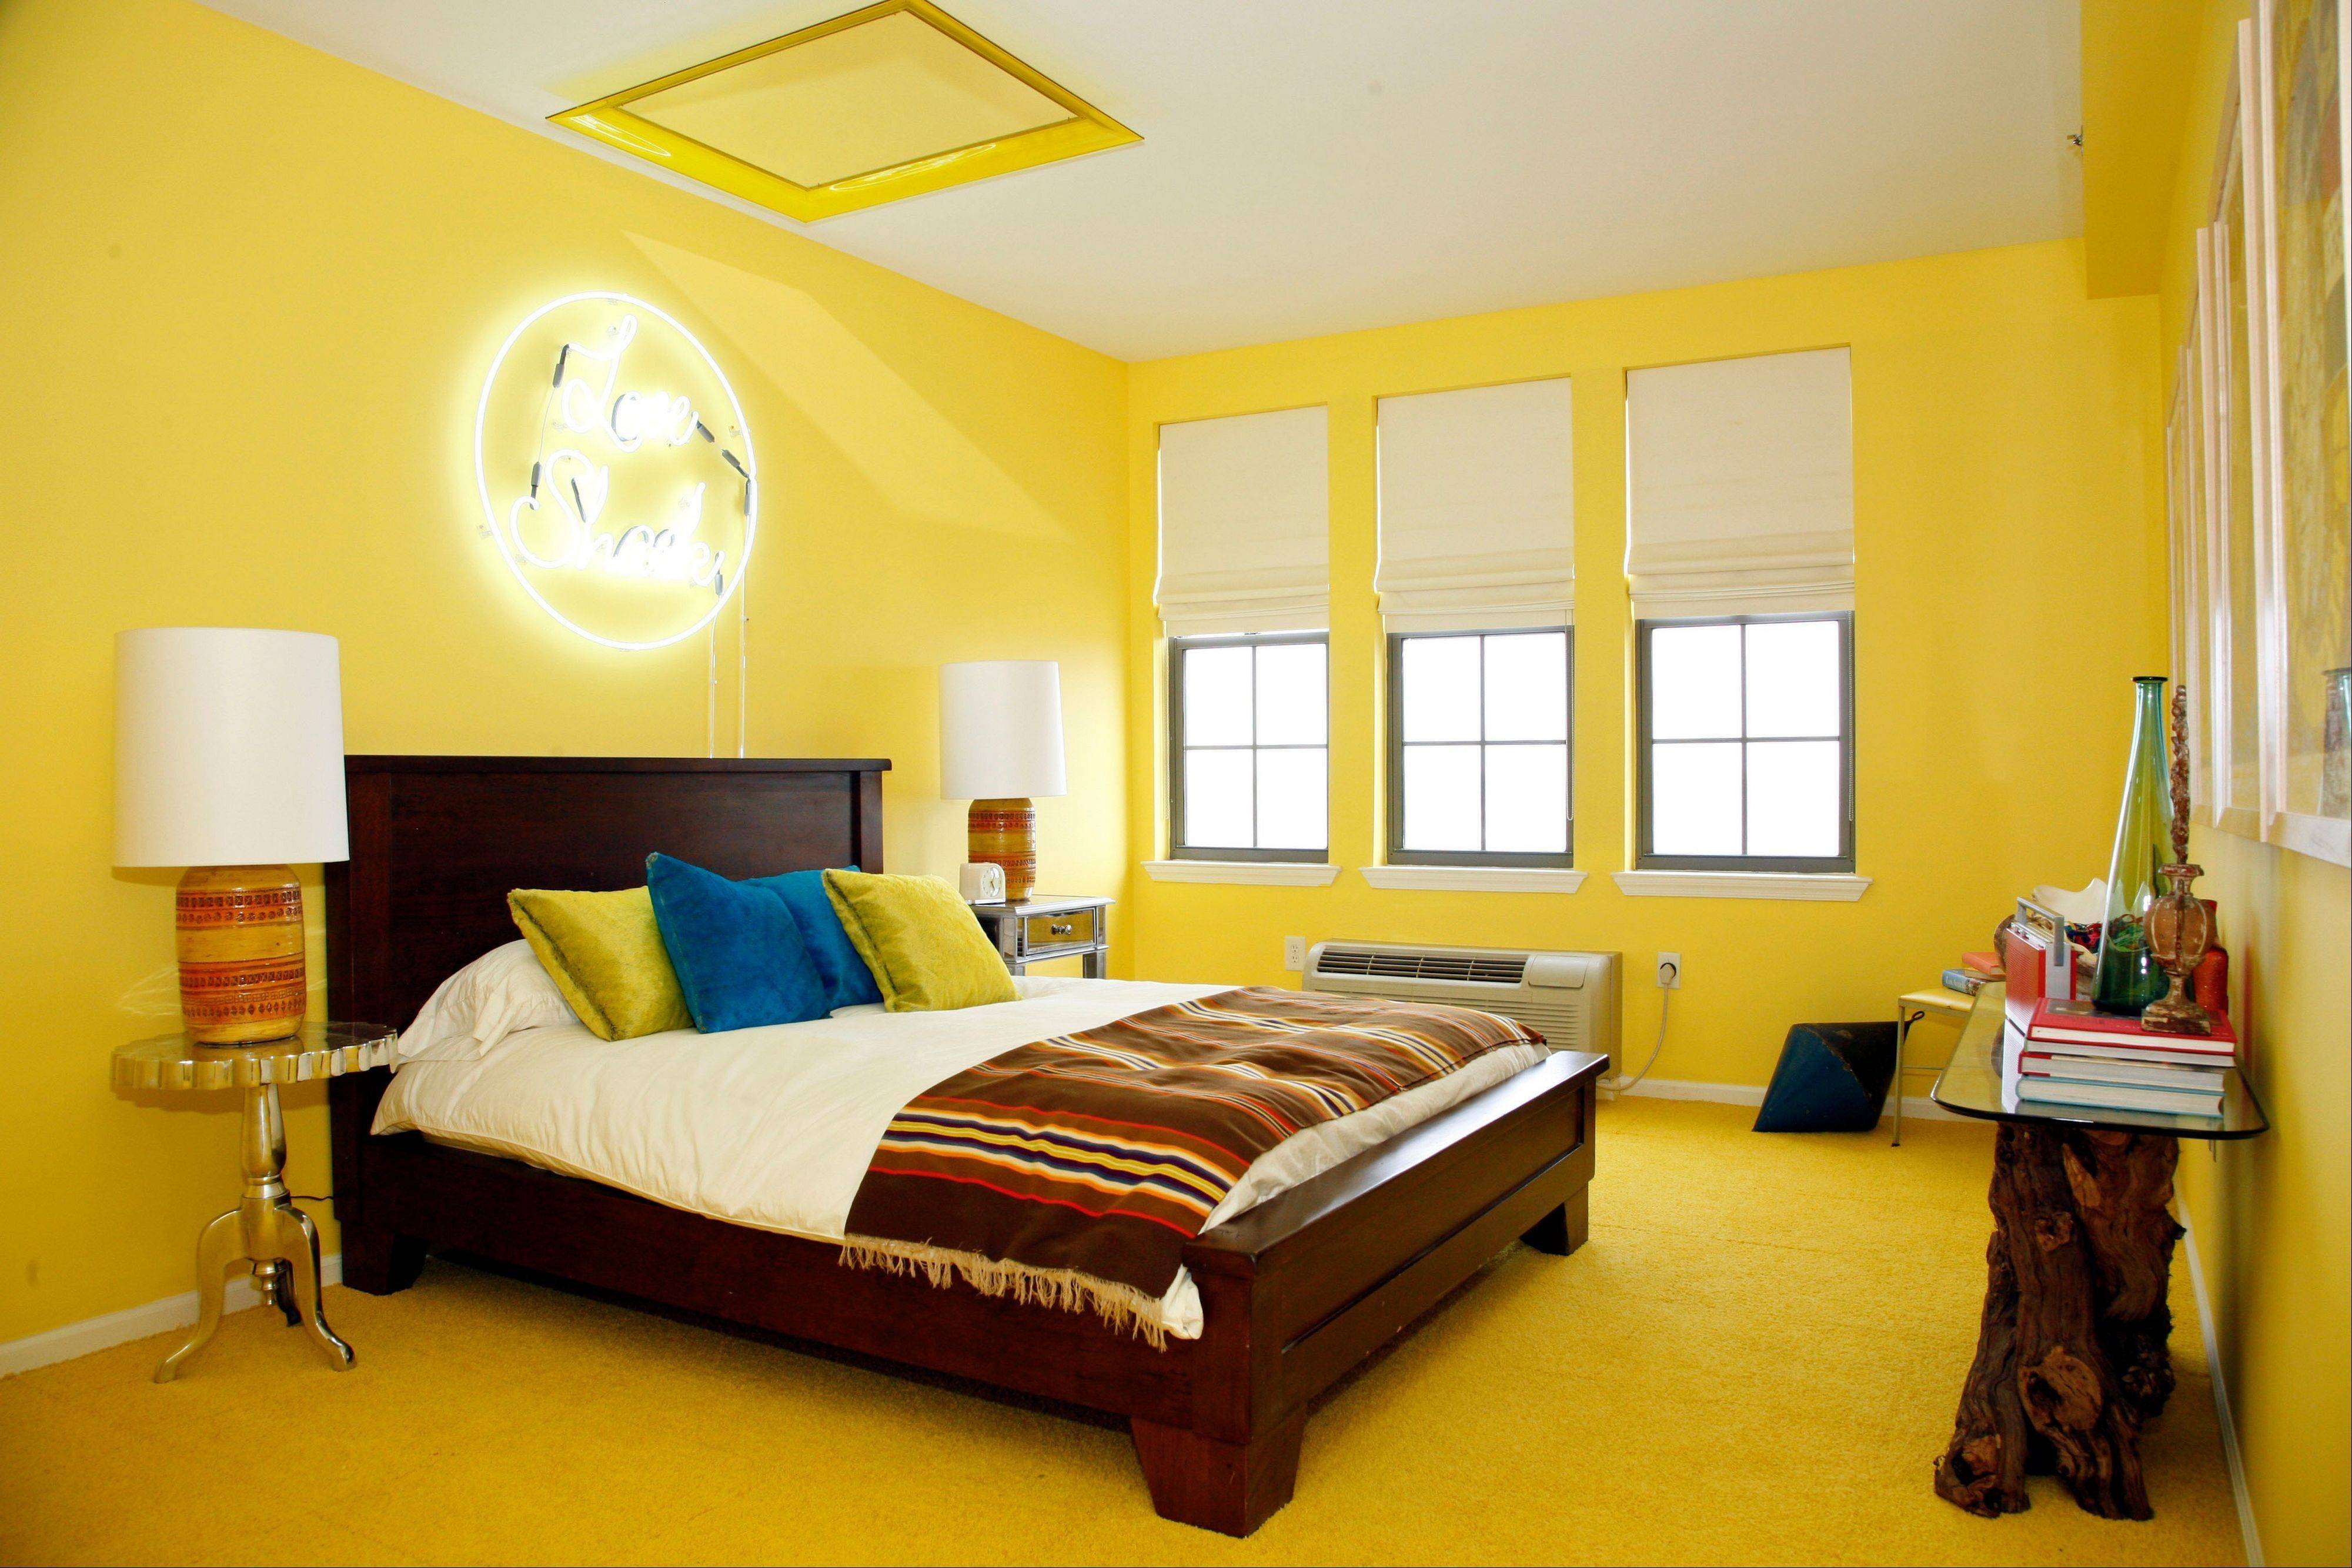 Как будут смотреться желтые обои в интерьере, фото спальни, детской, гостиной, кухни, примеры сочетания серого, белого, синего цвета с обоями в желтых тонах